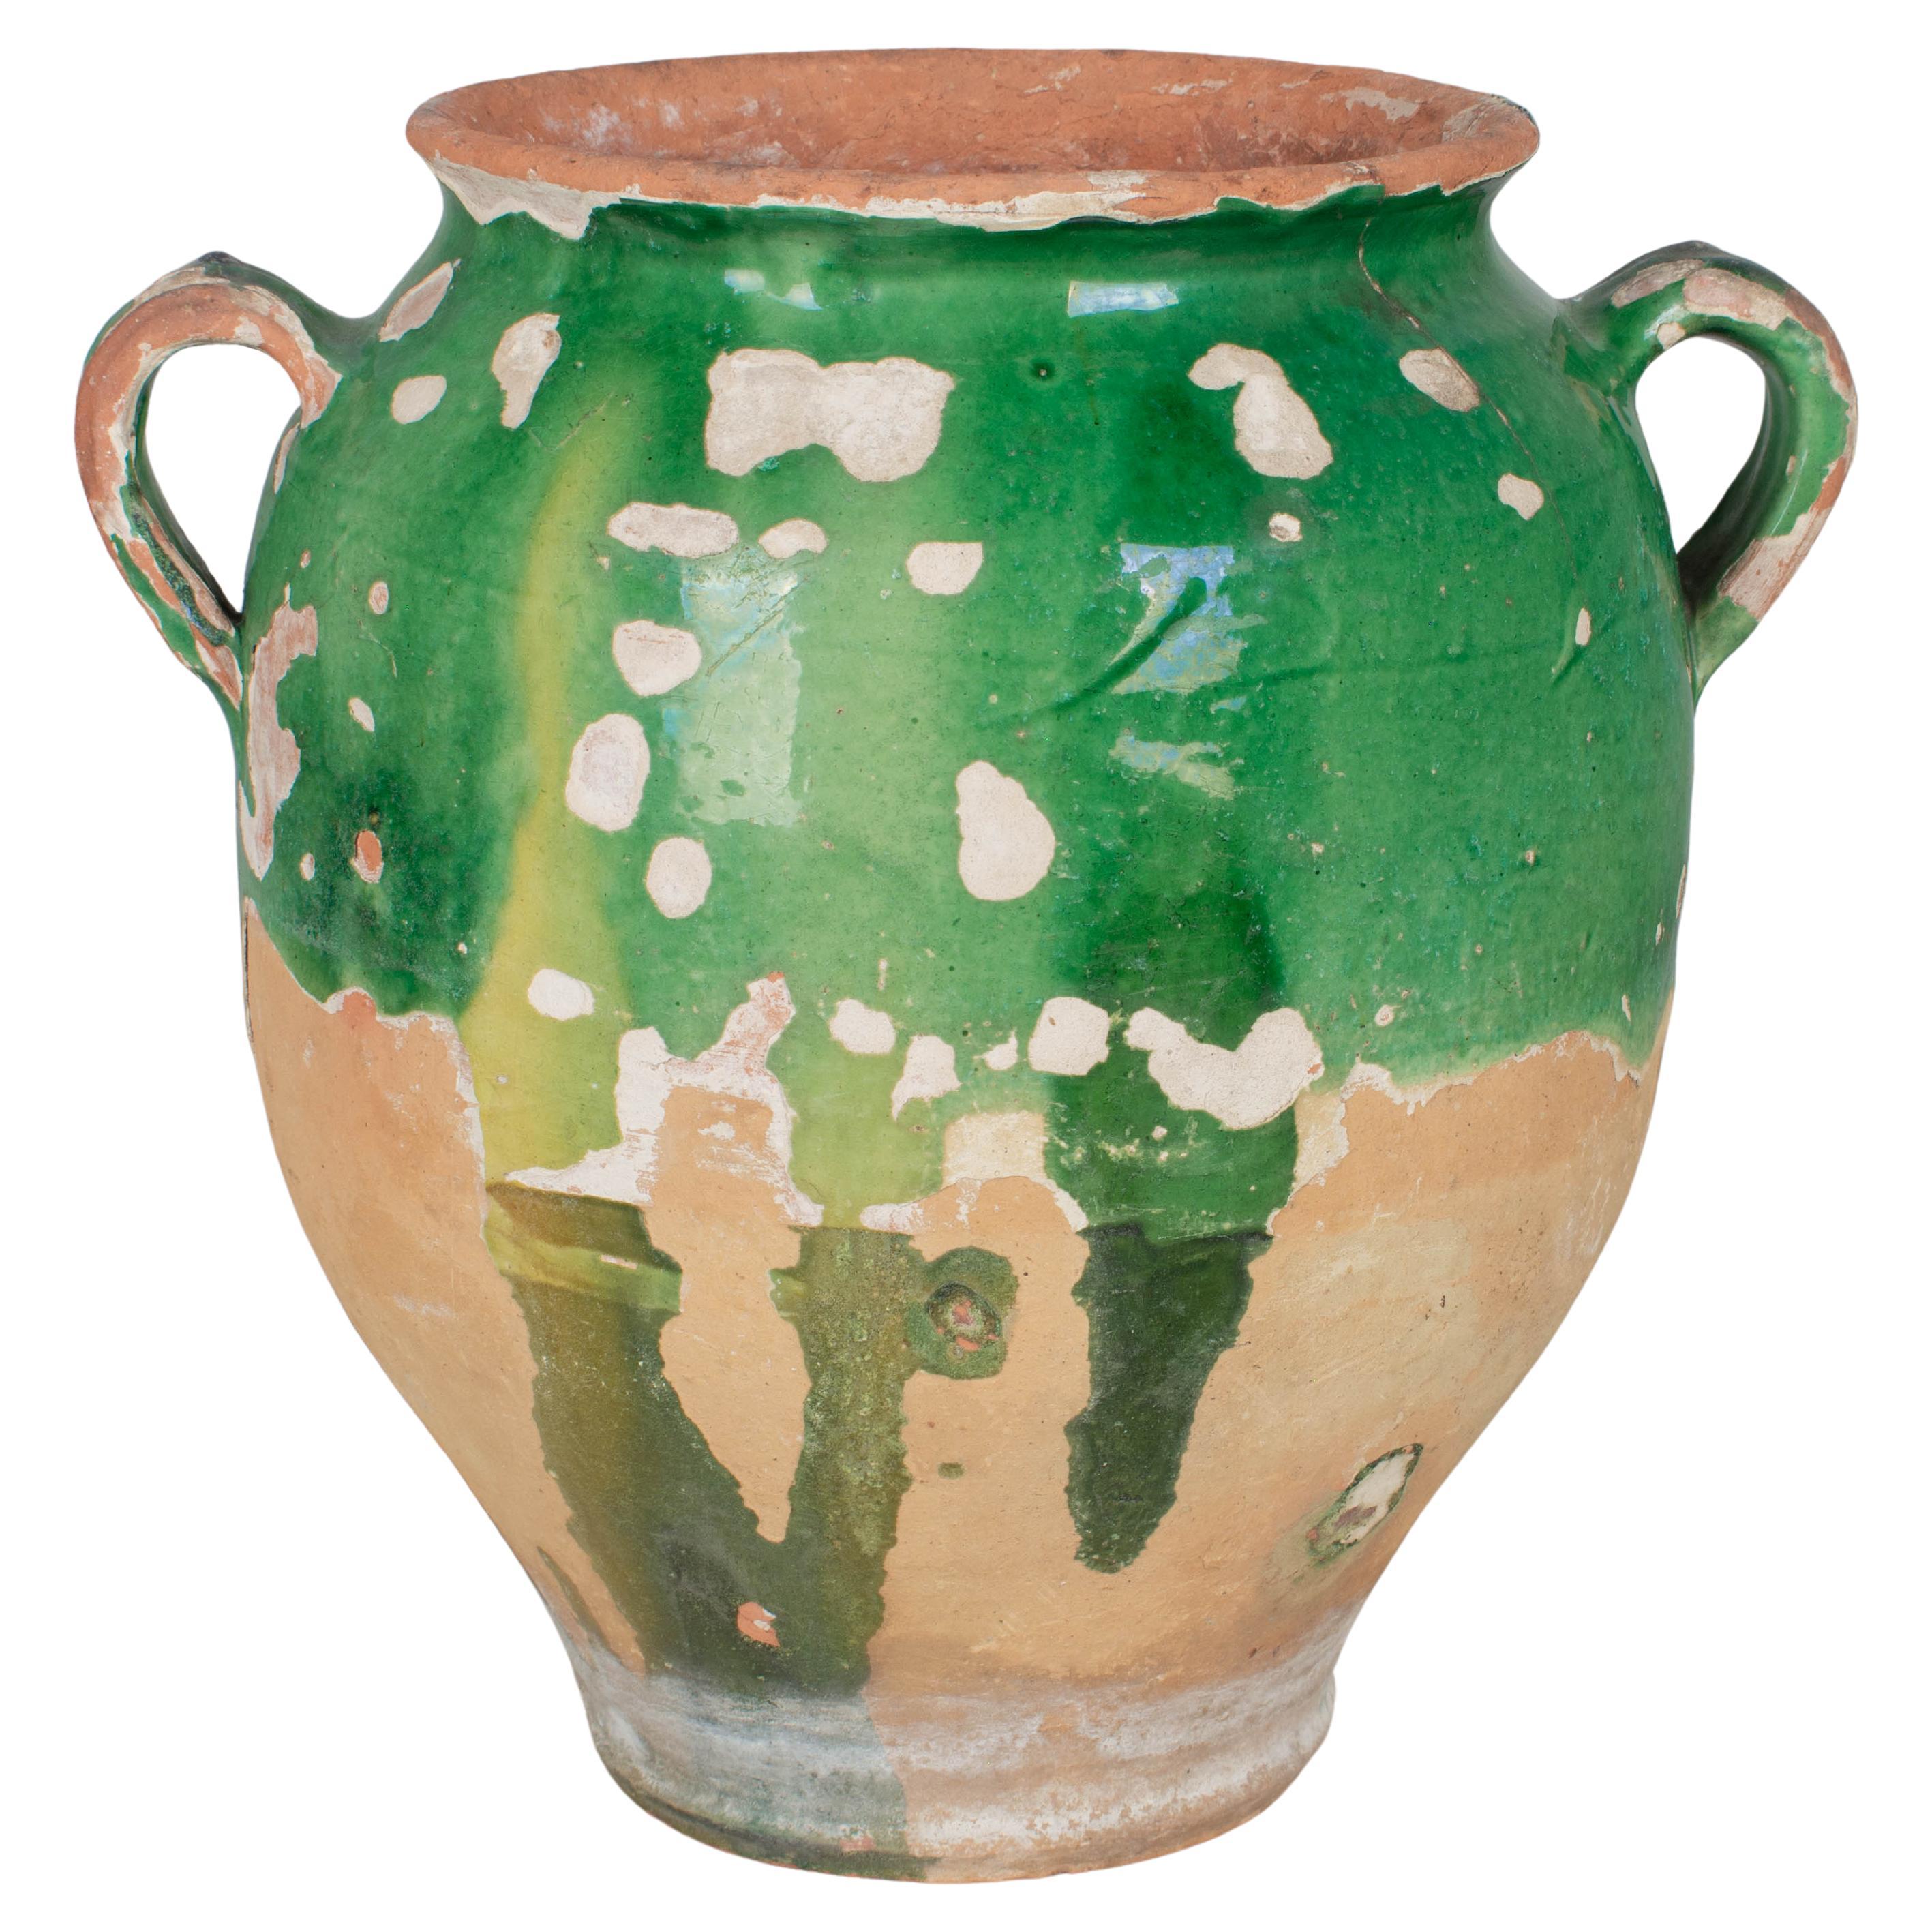 Französische grün glasierte Terrakotta-Keramik